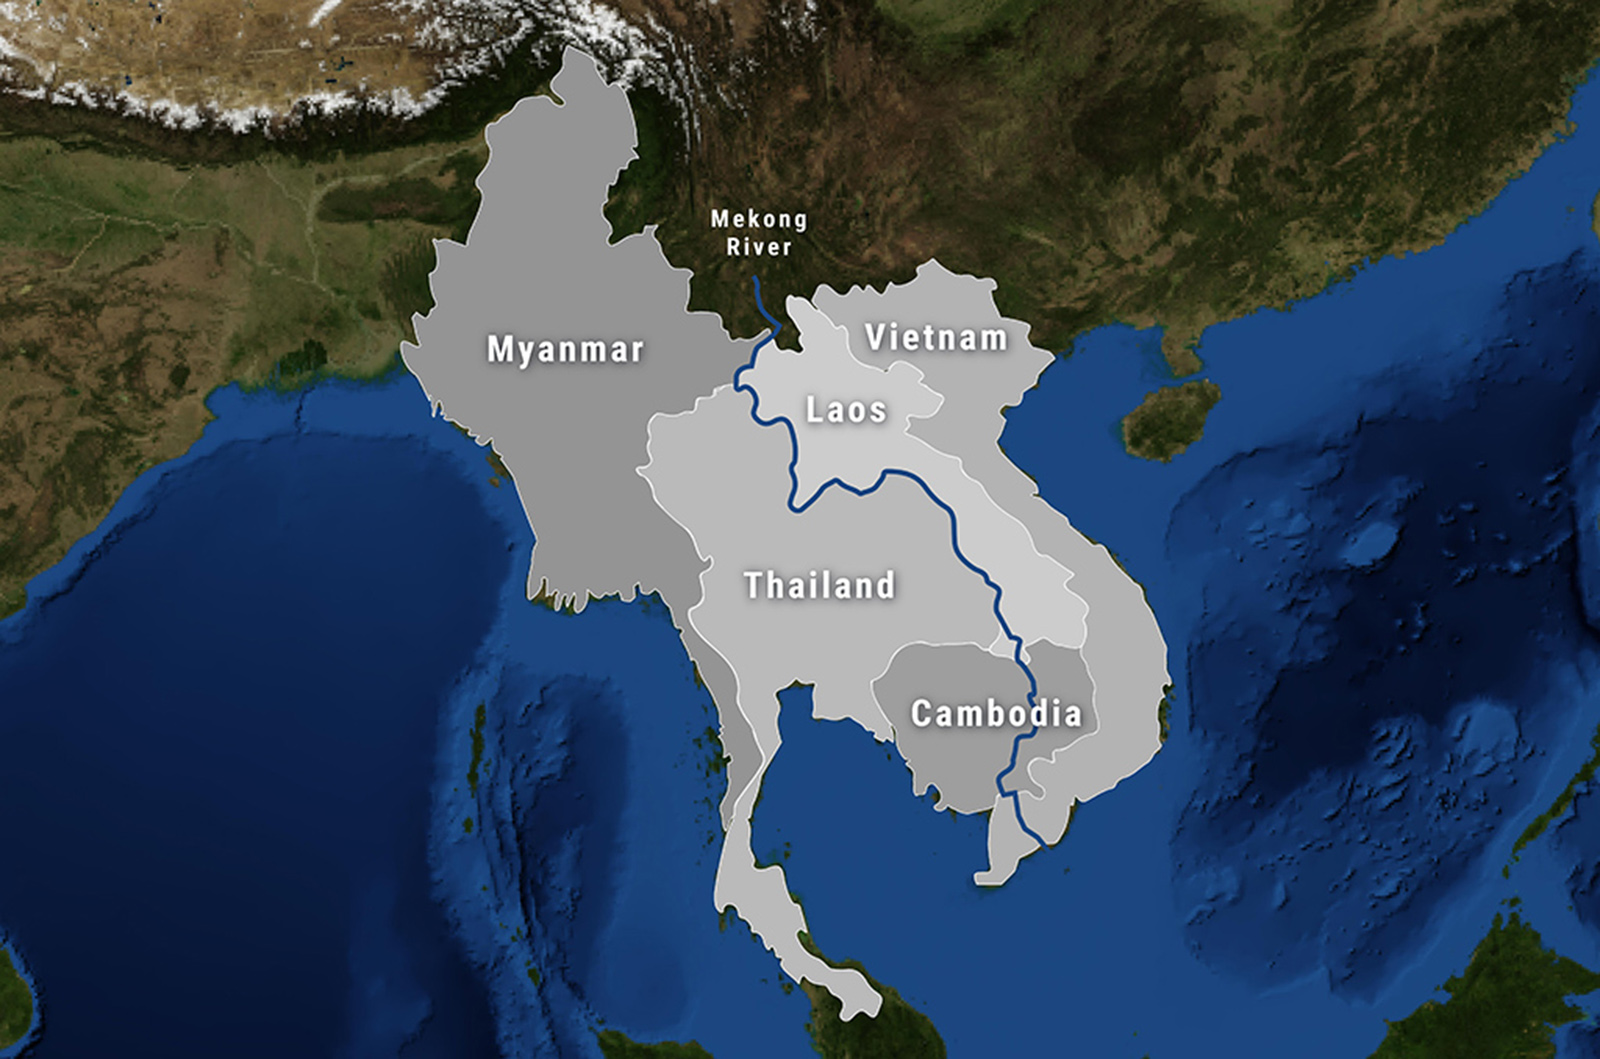 About SERVIR-Mekong